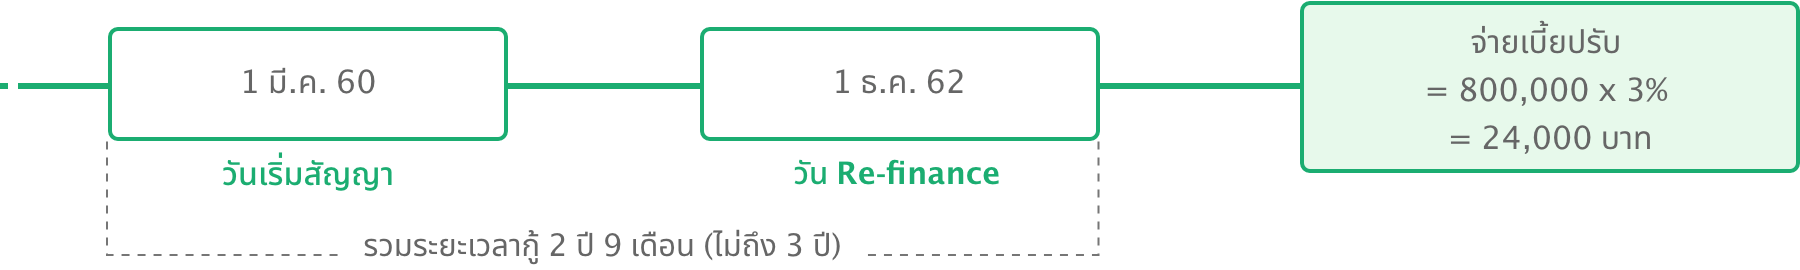 refinance example